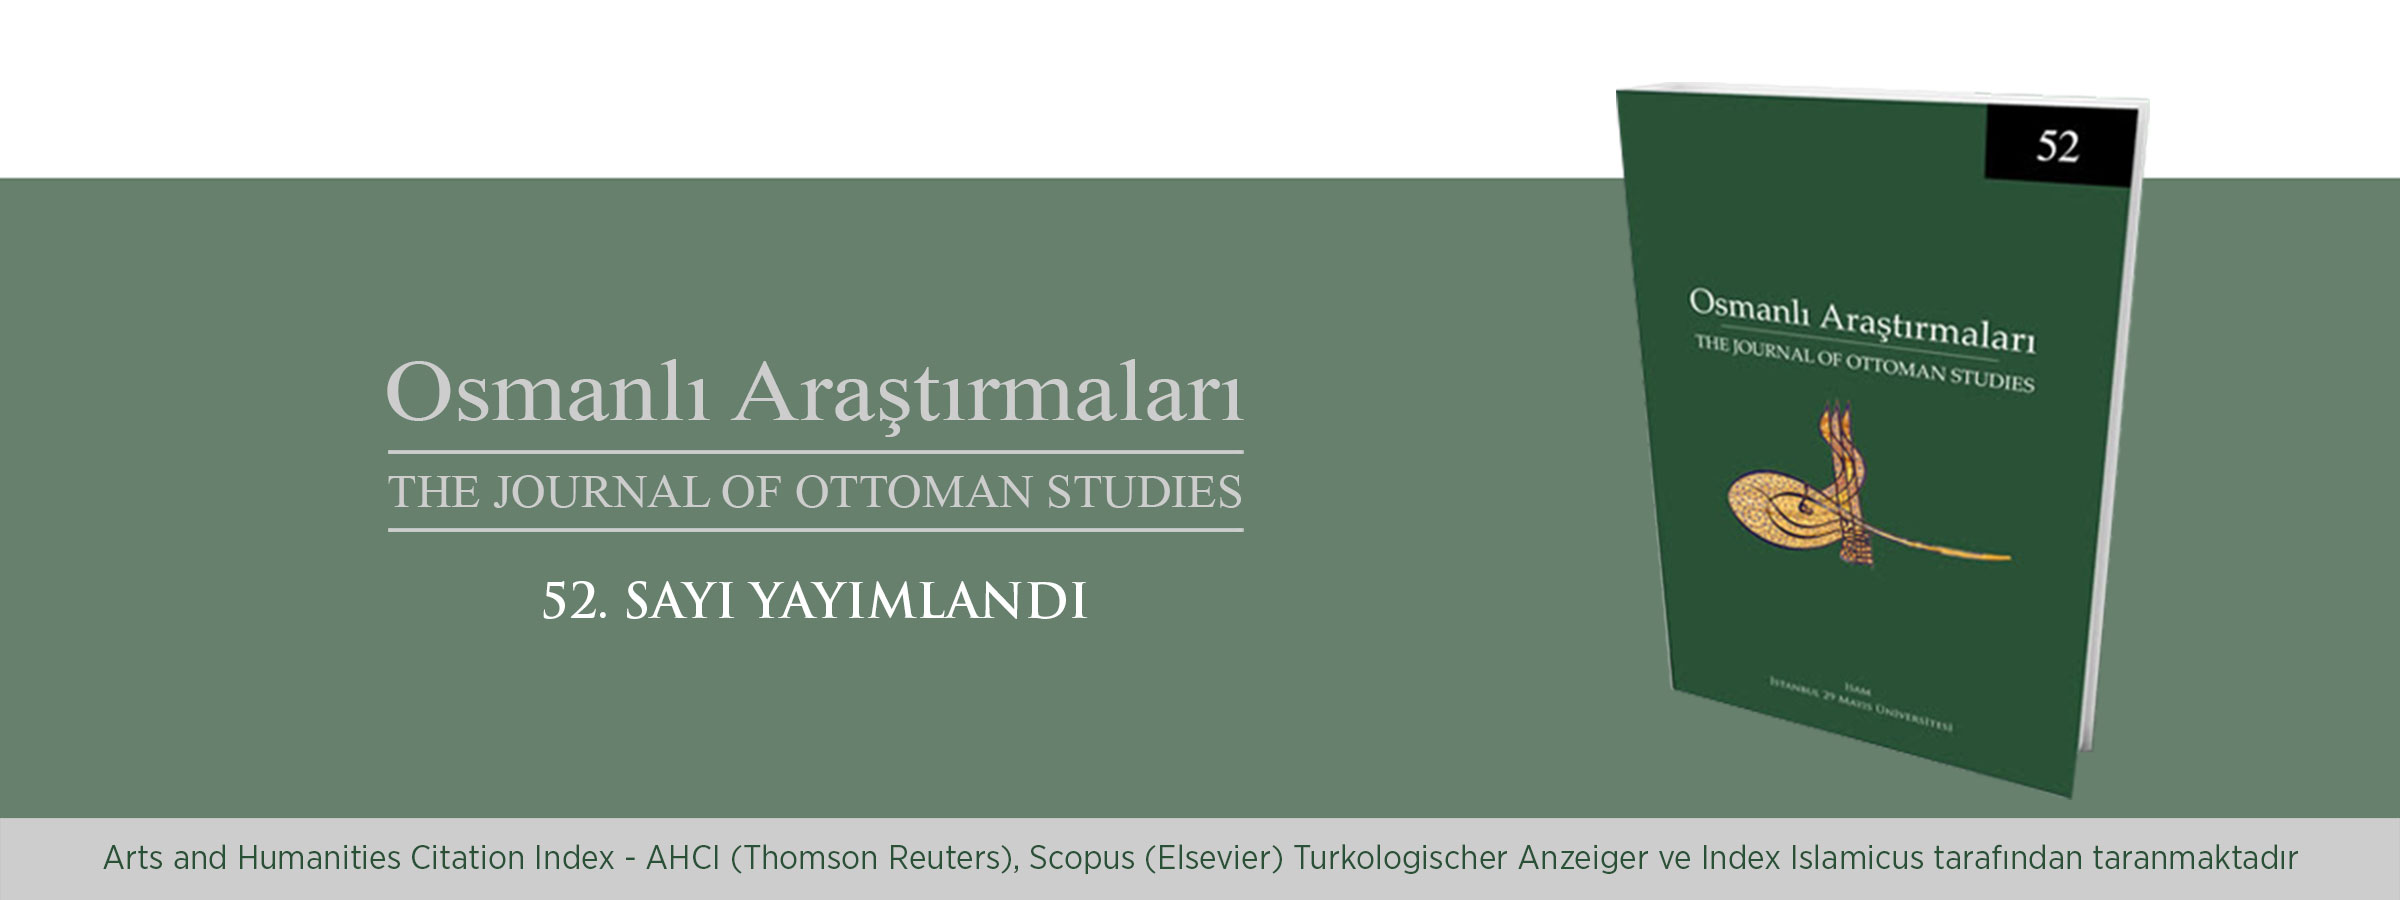 Osmanlı Araştırmaları Dergisi'nin 52. Sayısı Yayımlandı